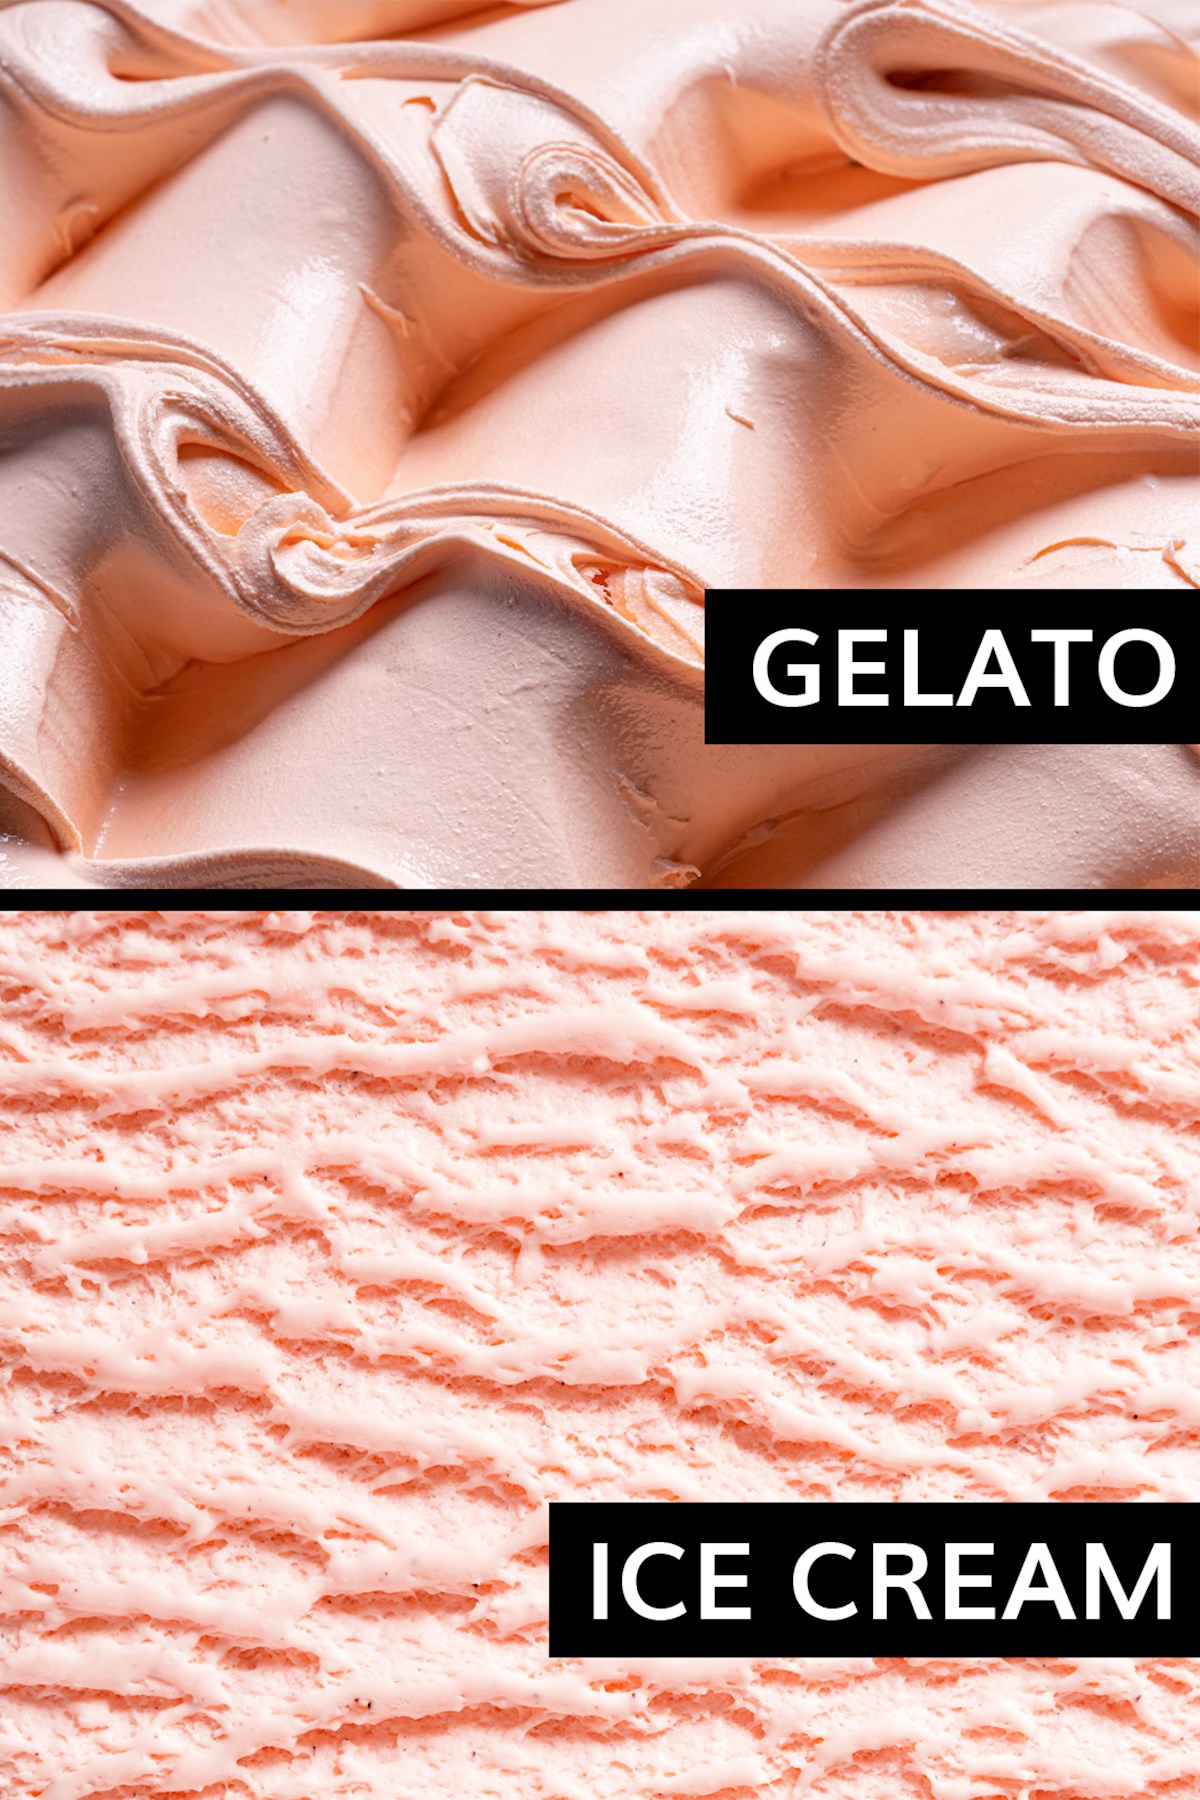 Texture of gelato and ice cream